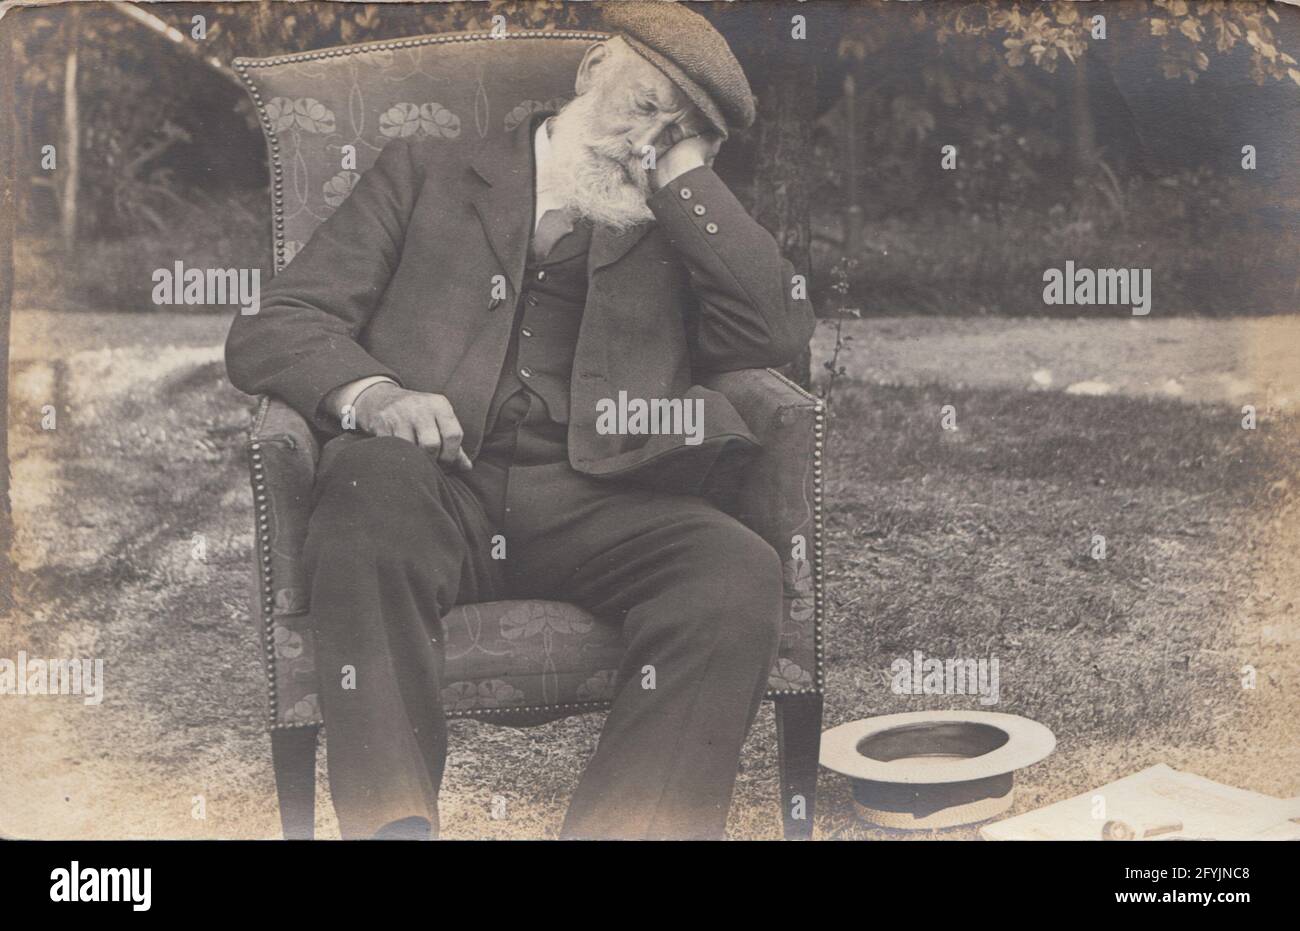 Carte postale photographique vintage du début du XXe siècle montrant un homme âgé avec une barbe blanche et portant un costume et une casquette en tissu snoozing à l'extérieur dans sa chaise. Banque D'Images